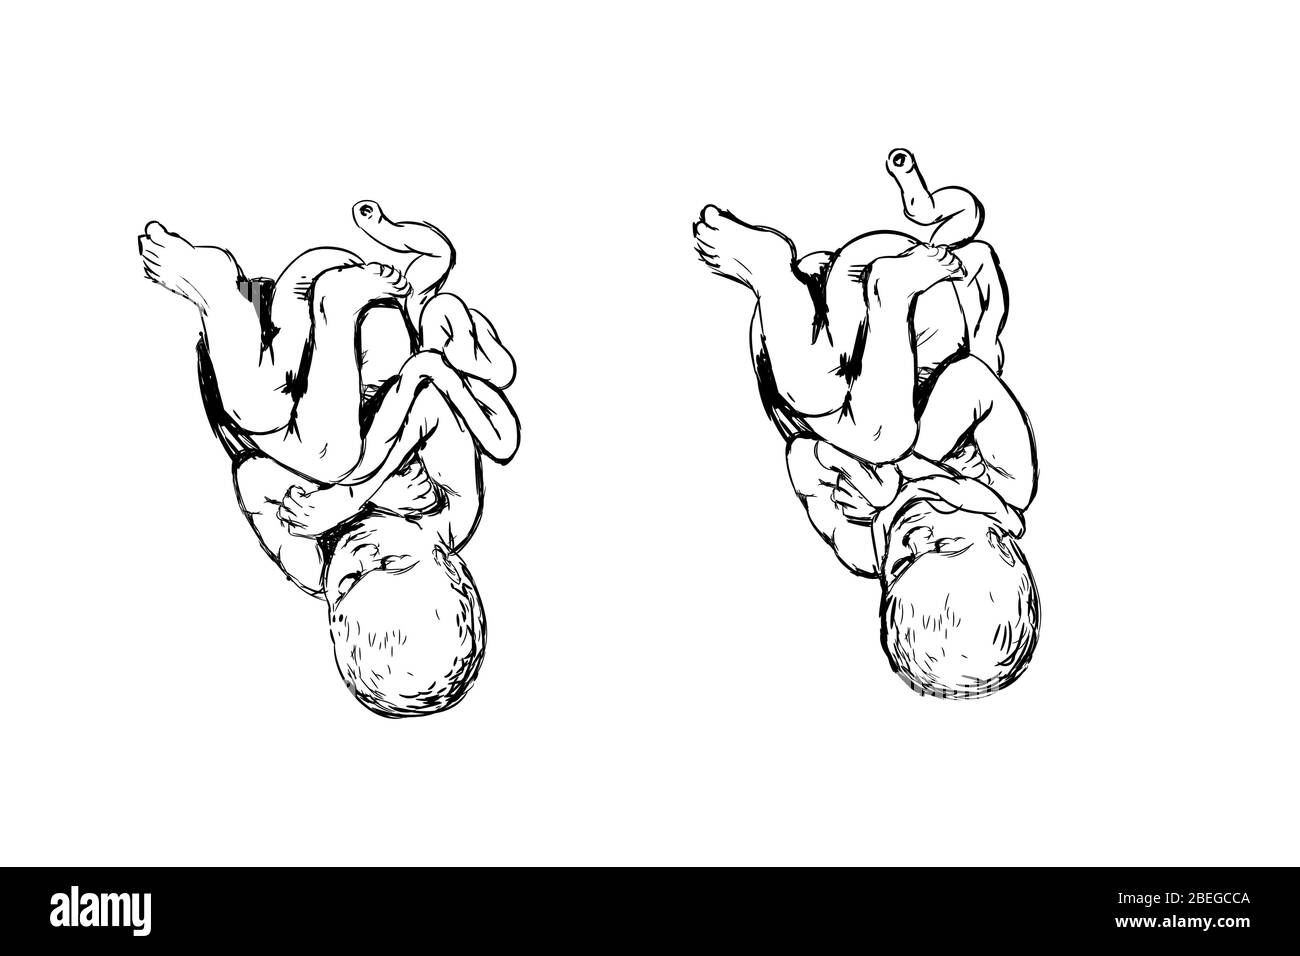 Illustration montrant un bébé avec cordon nucal (le cordon ombilical enveloppé autour du cou), condition qui peut potentiellement causer des complications à la naissance, telles que l'asphyxie. Banque D'Images